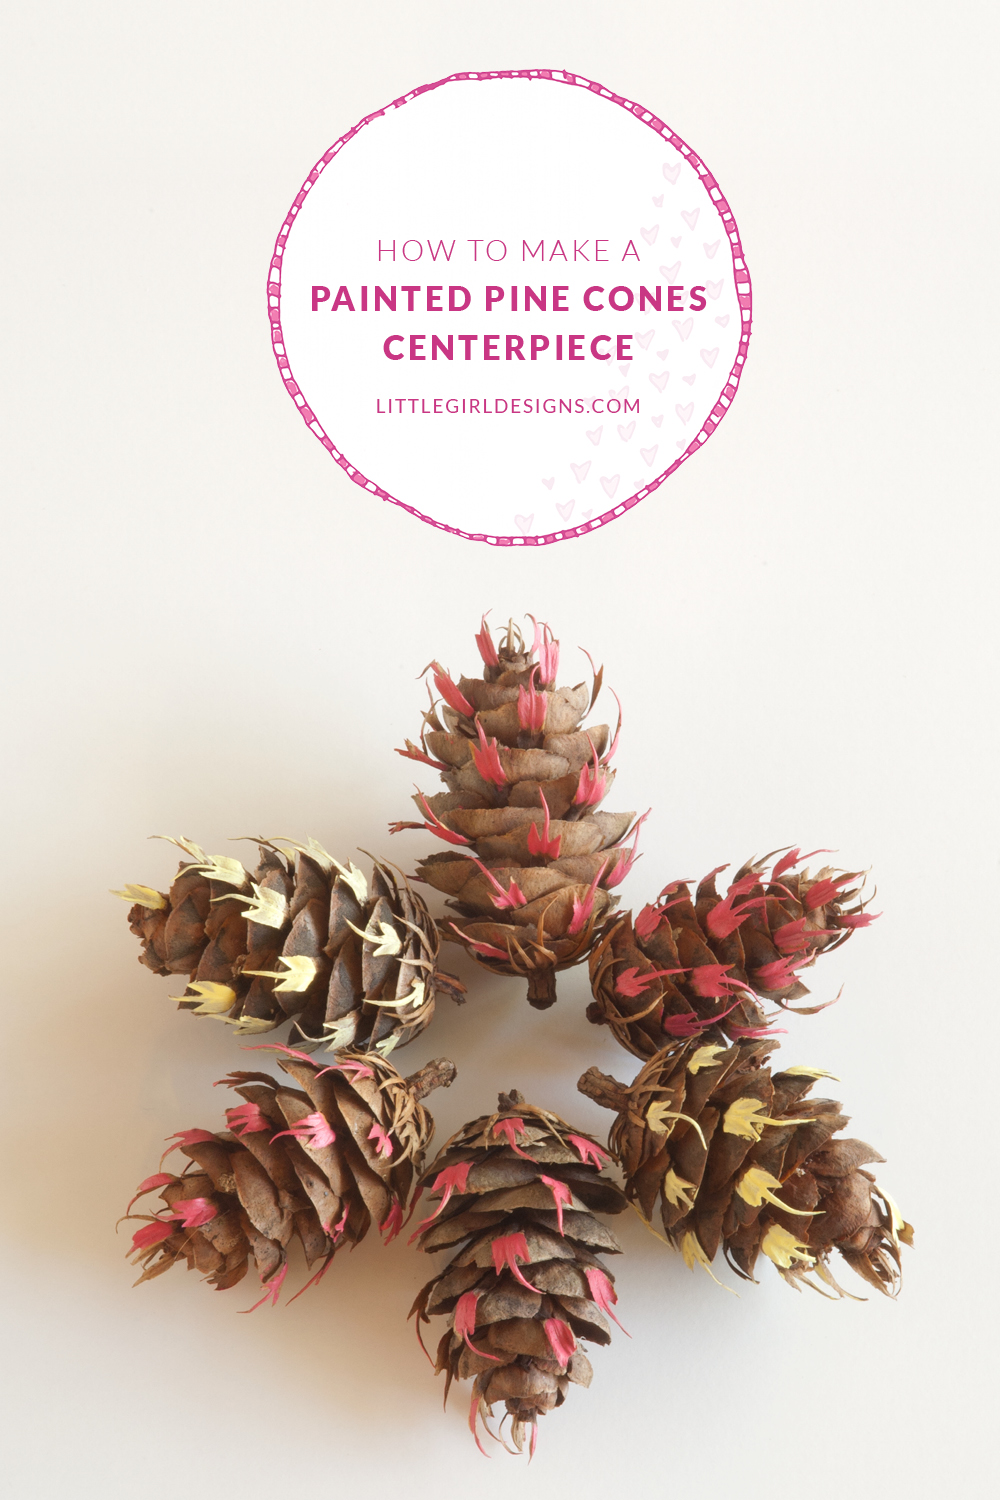 How to transform regular Douglas Fir pinecones into works of art. A pretty idea for a spring centerpiece @littlegirldesigns.com